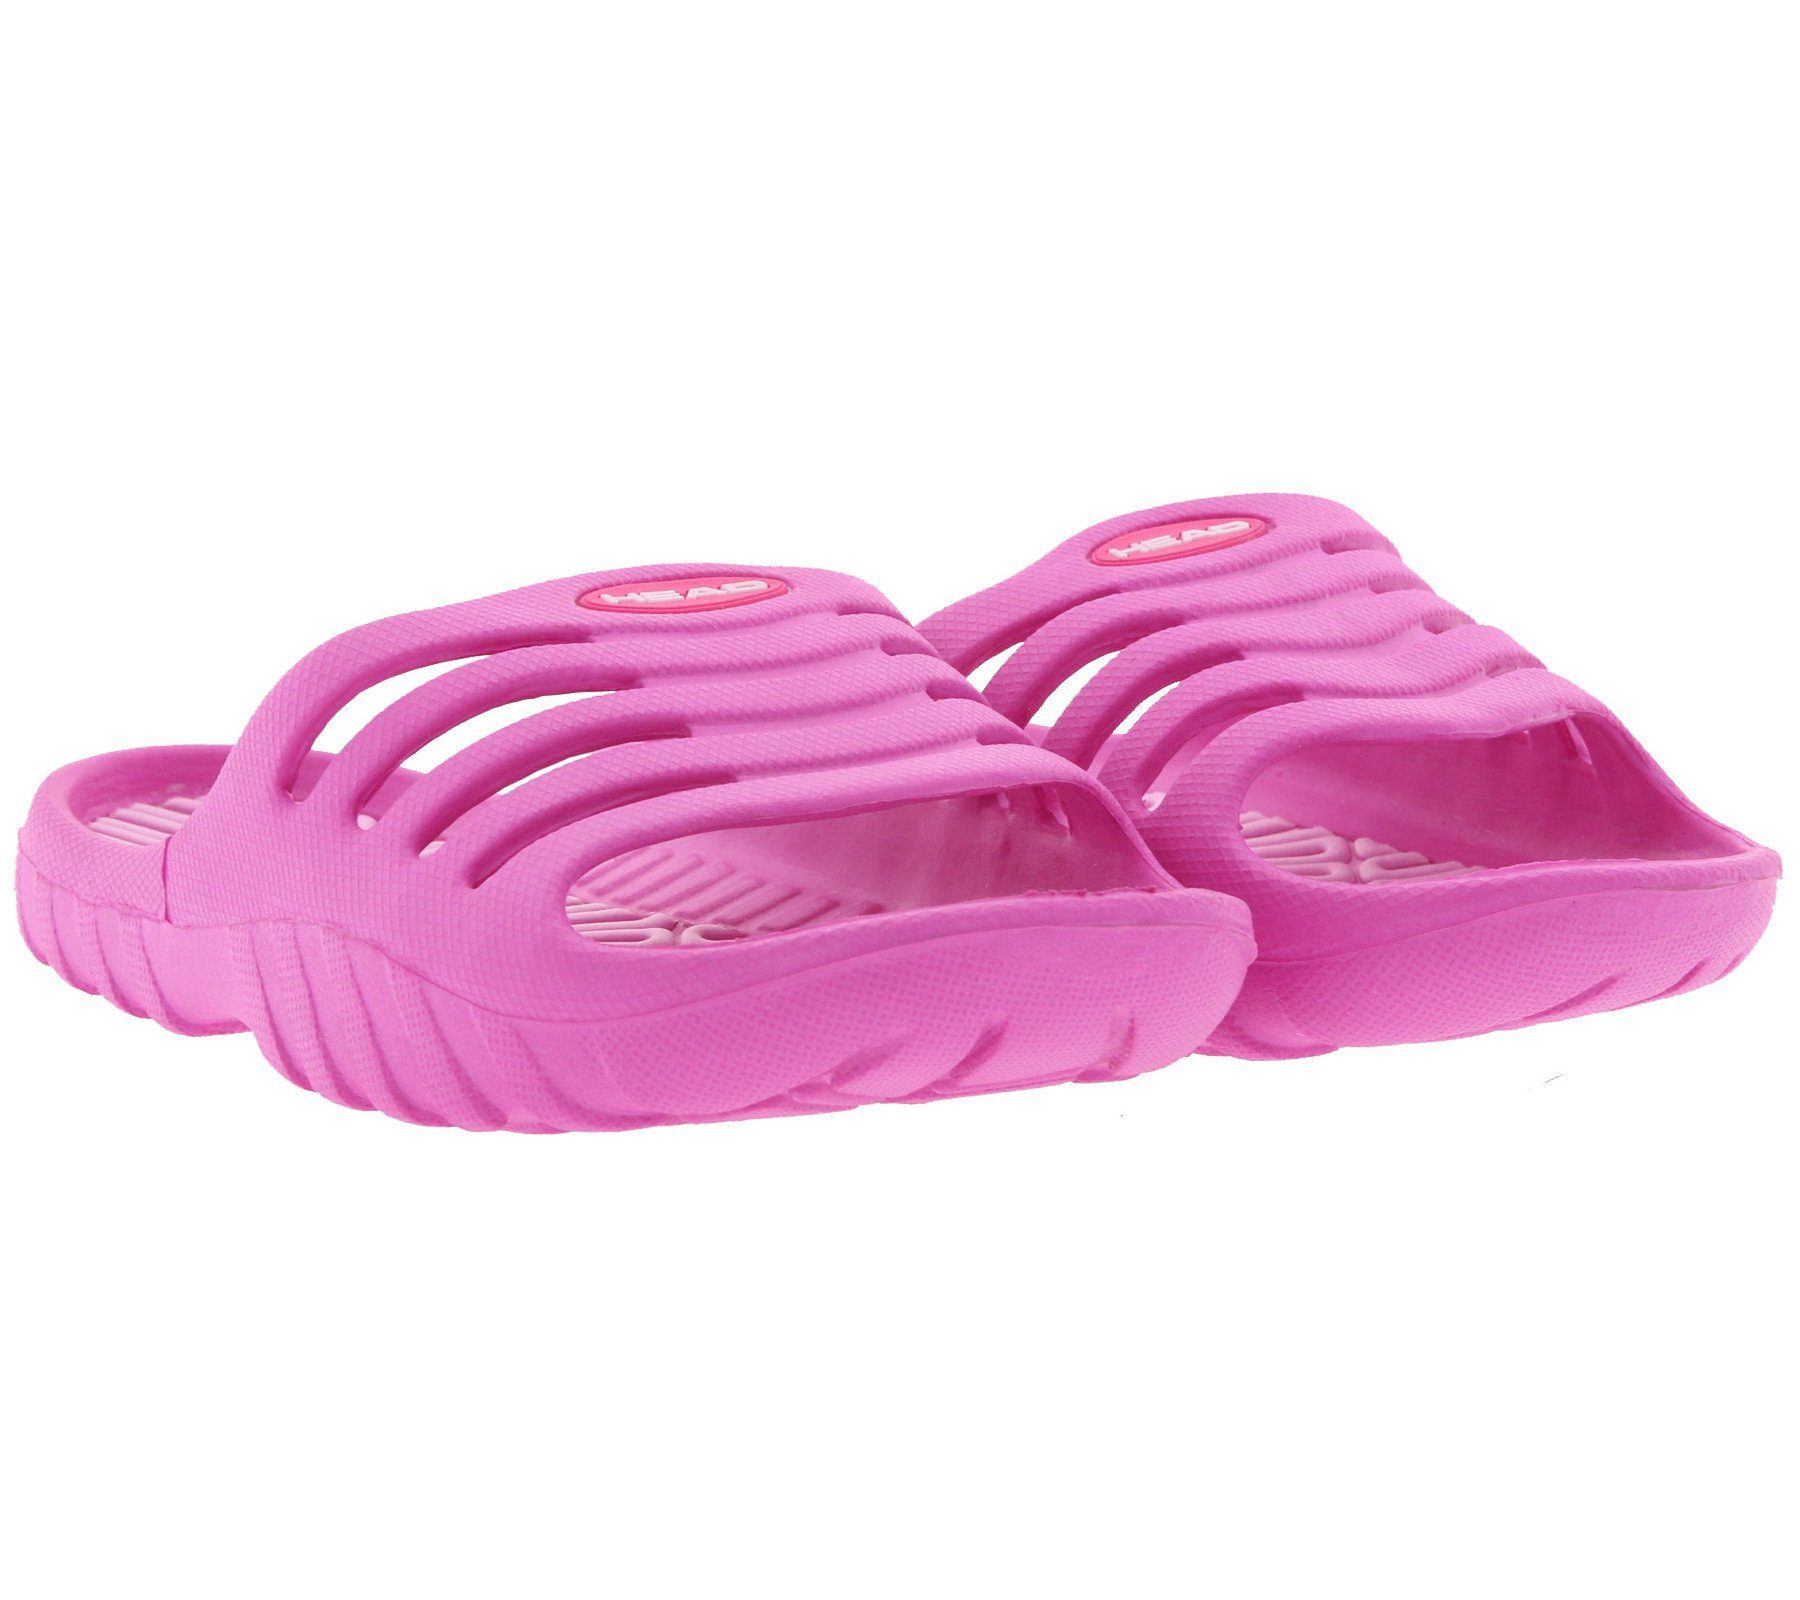 Head »HEAD Slipper Schwimm-Schuhe farbenfrohe Kinder Bade-Latschen  Bade-Schuhe Pink« Badeschuh online kaufen | OTTO